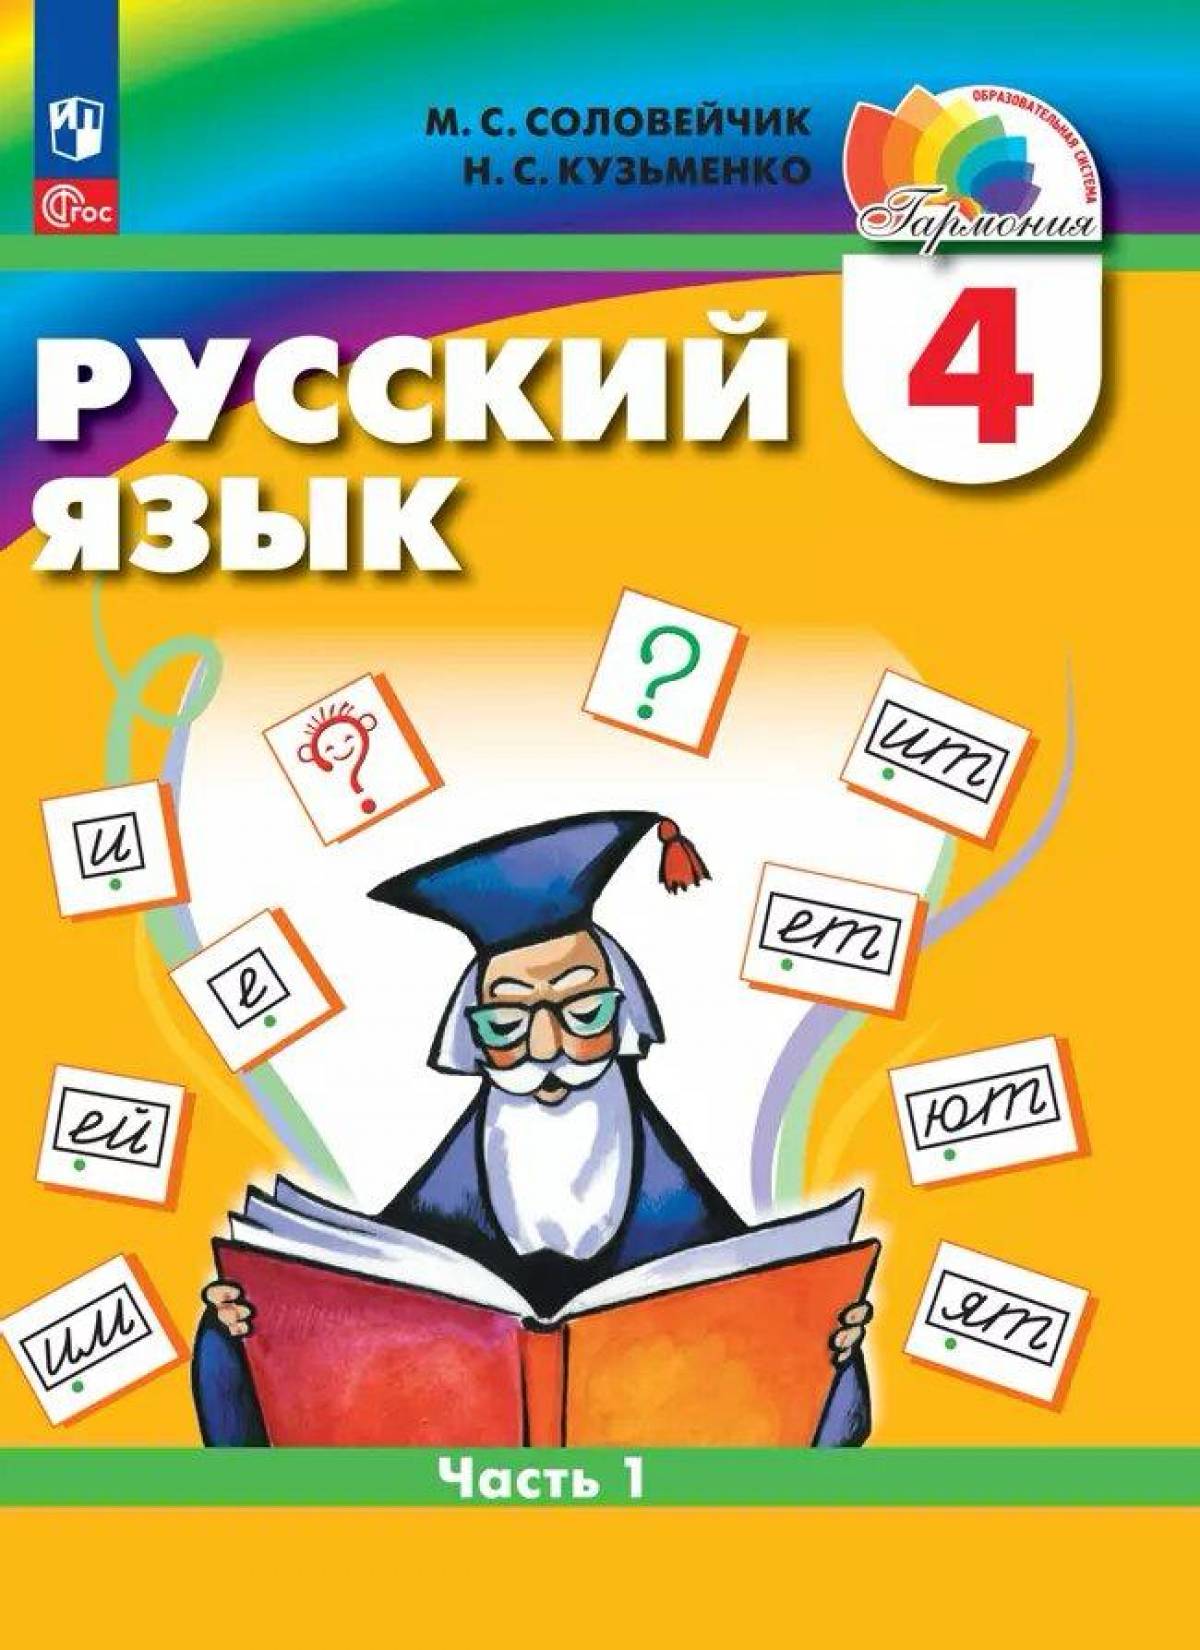 Выбор учебника по русскому языку для четвертого класса издательства «Просвещение»